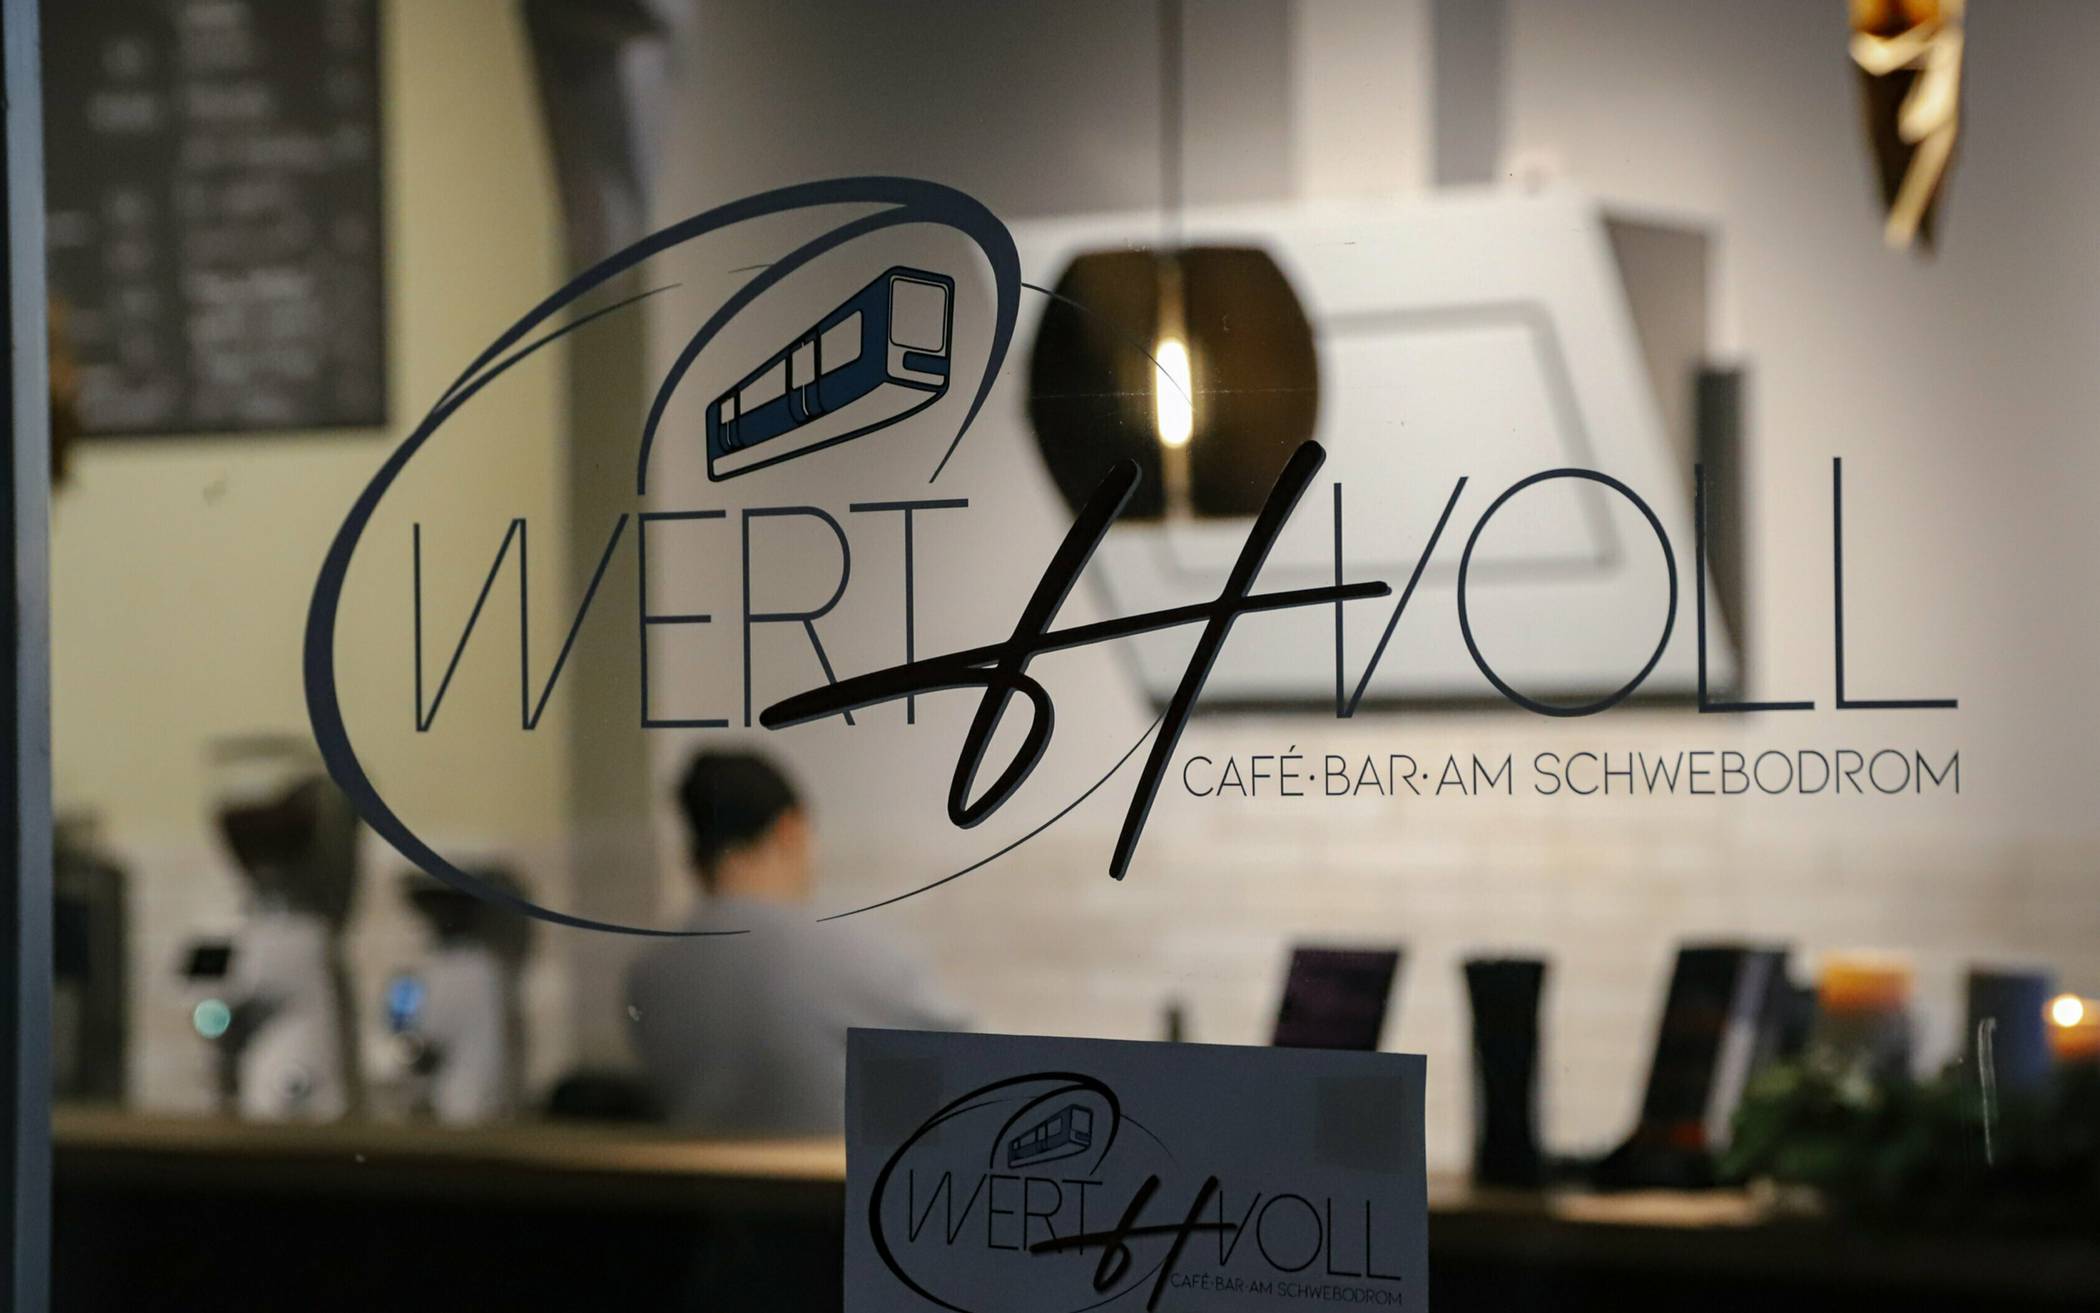 Das „Café Werthvoll“ an der Höhne 95 passt optimal in die „Zwanziger-Jahre-Passage“ gleich beim erfolgreichen „Schwebodrom“ auf dem Werth.